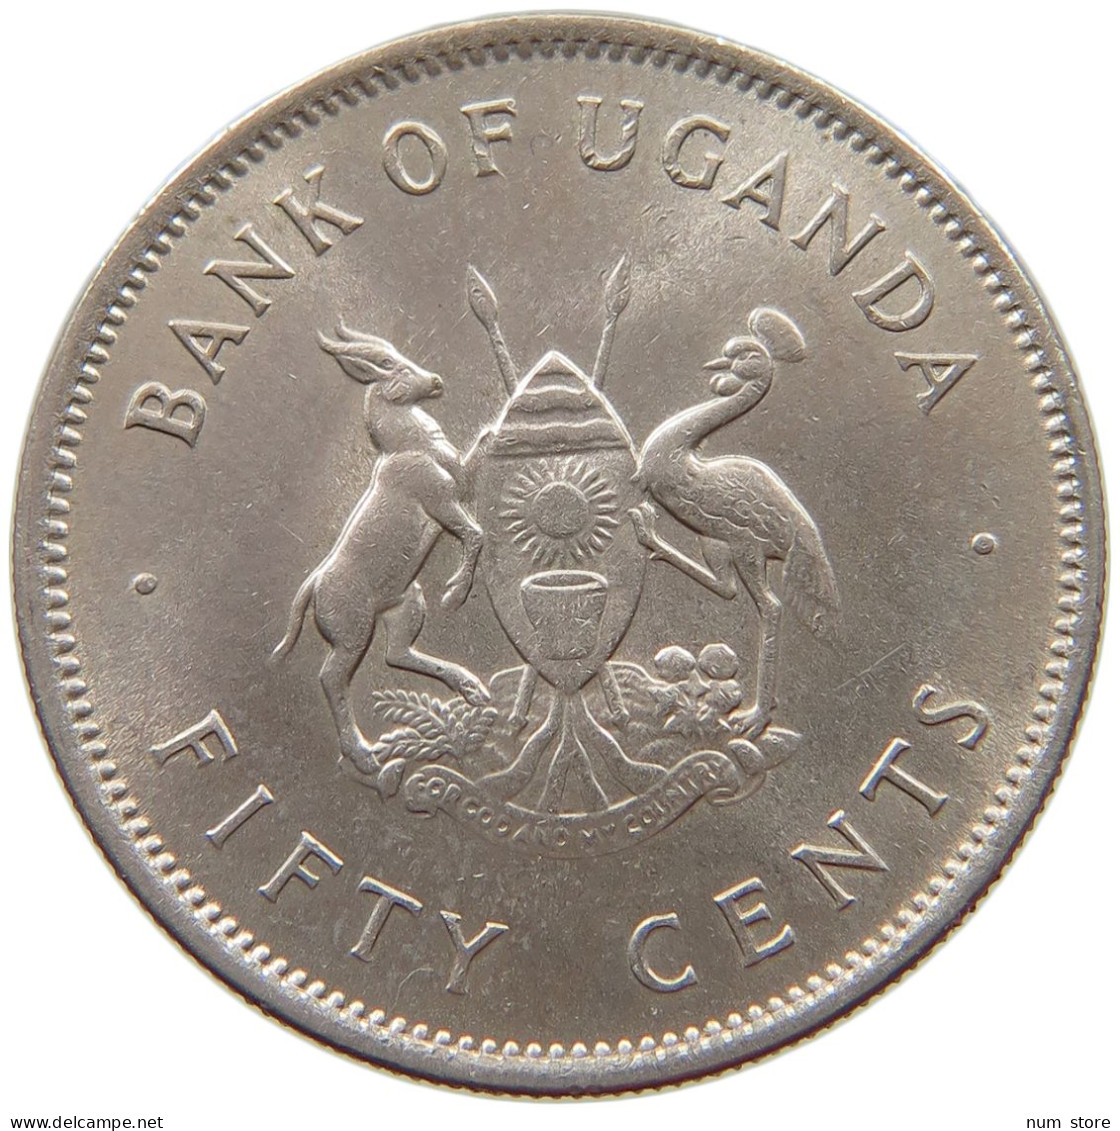 UGANDA 50 CENTS 1966  #s040 0233 - Uganda